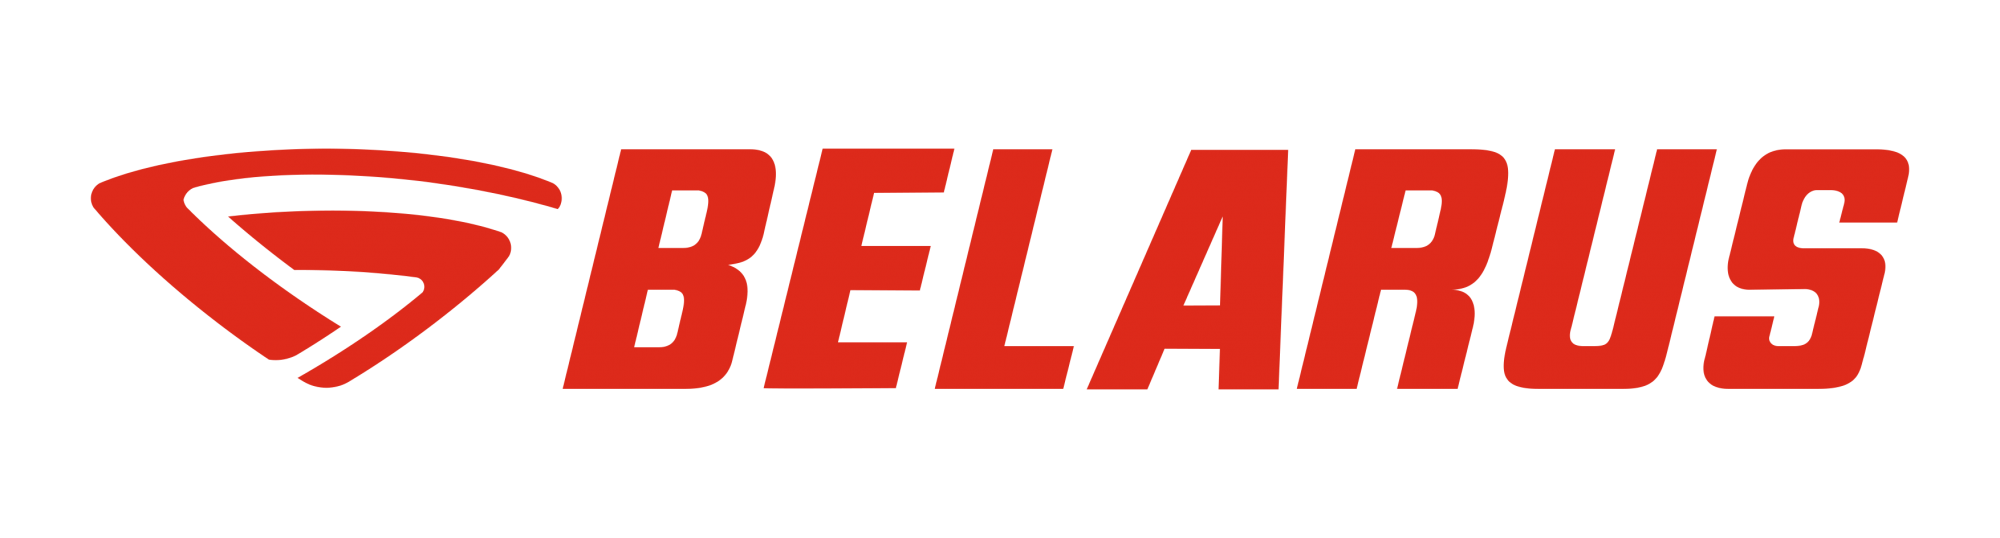 Логотипы BELARUS.png